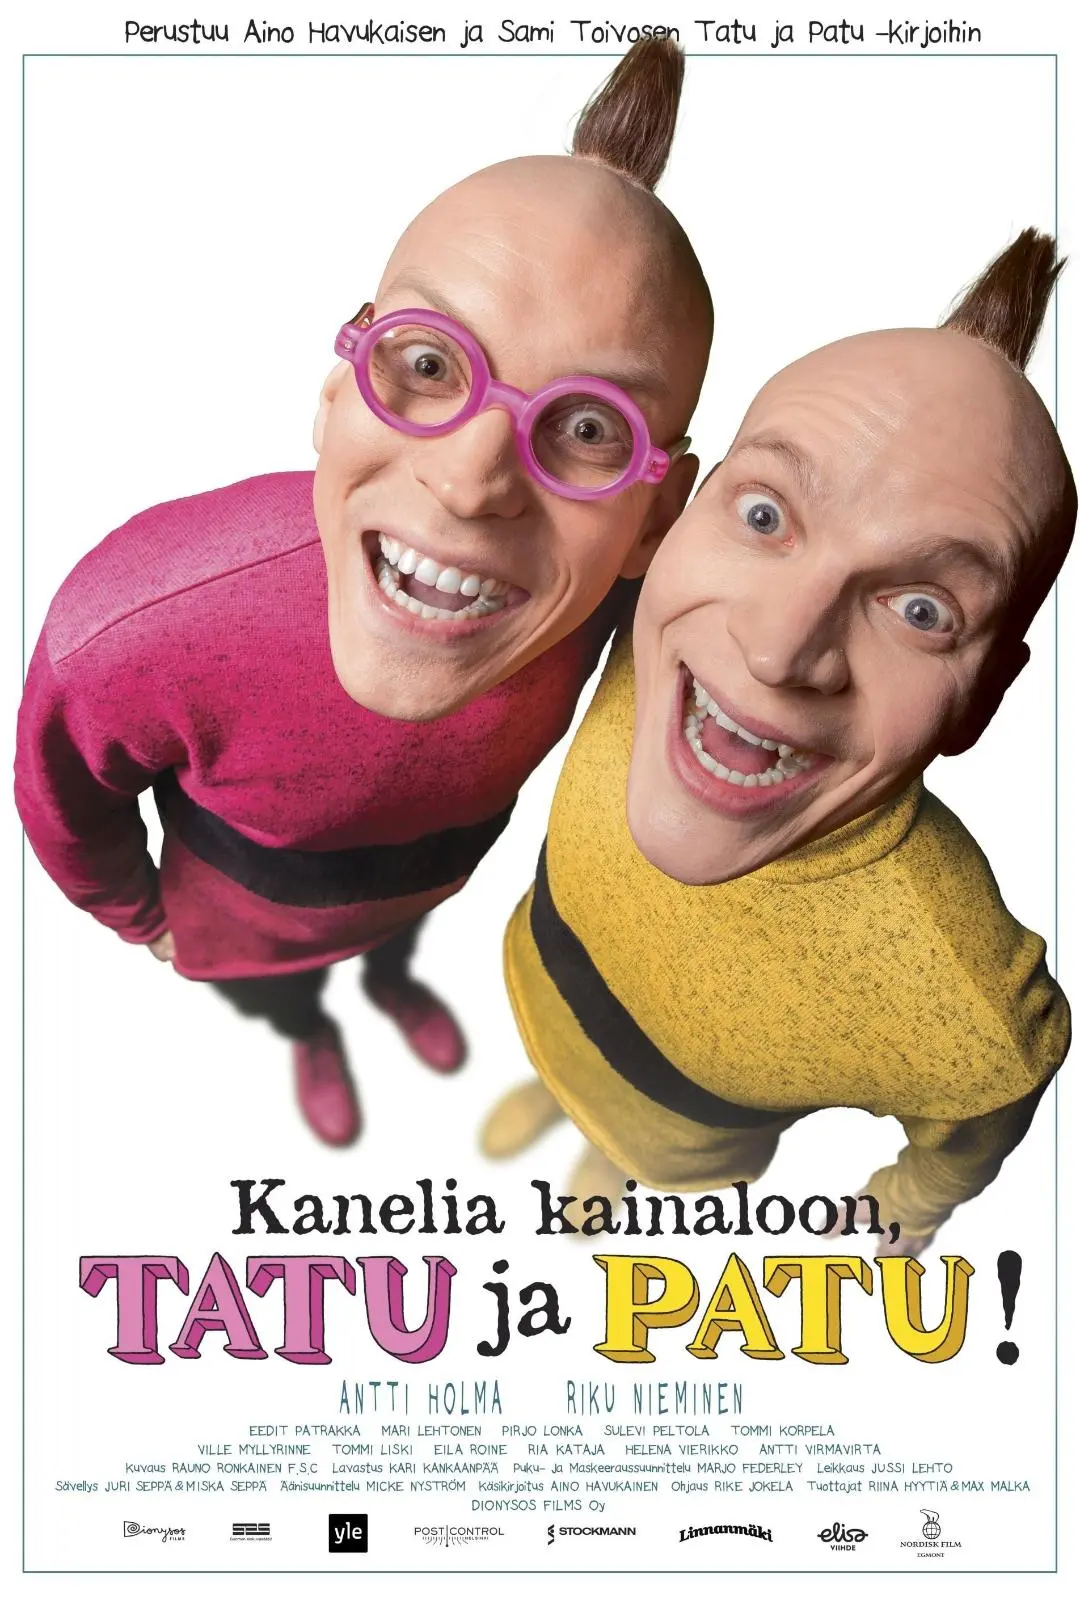 Tatu and Patu_peliplat